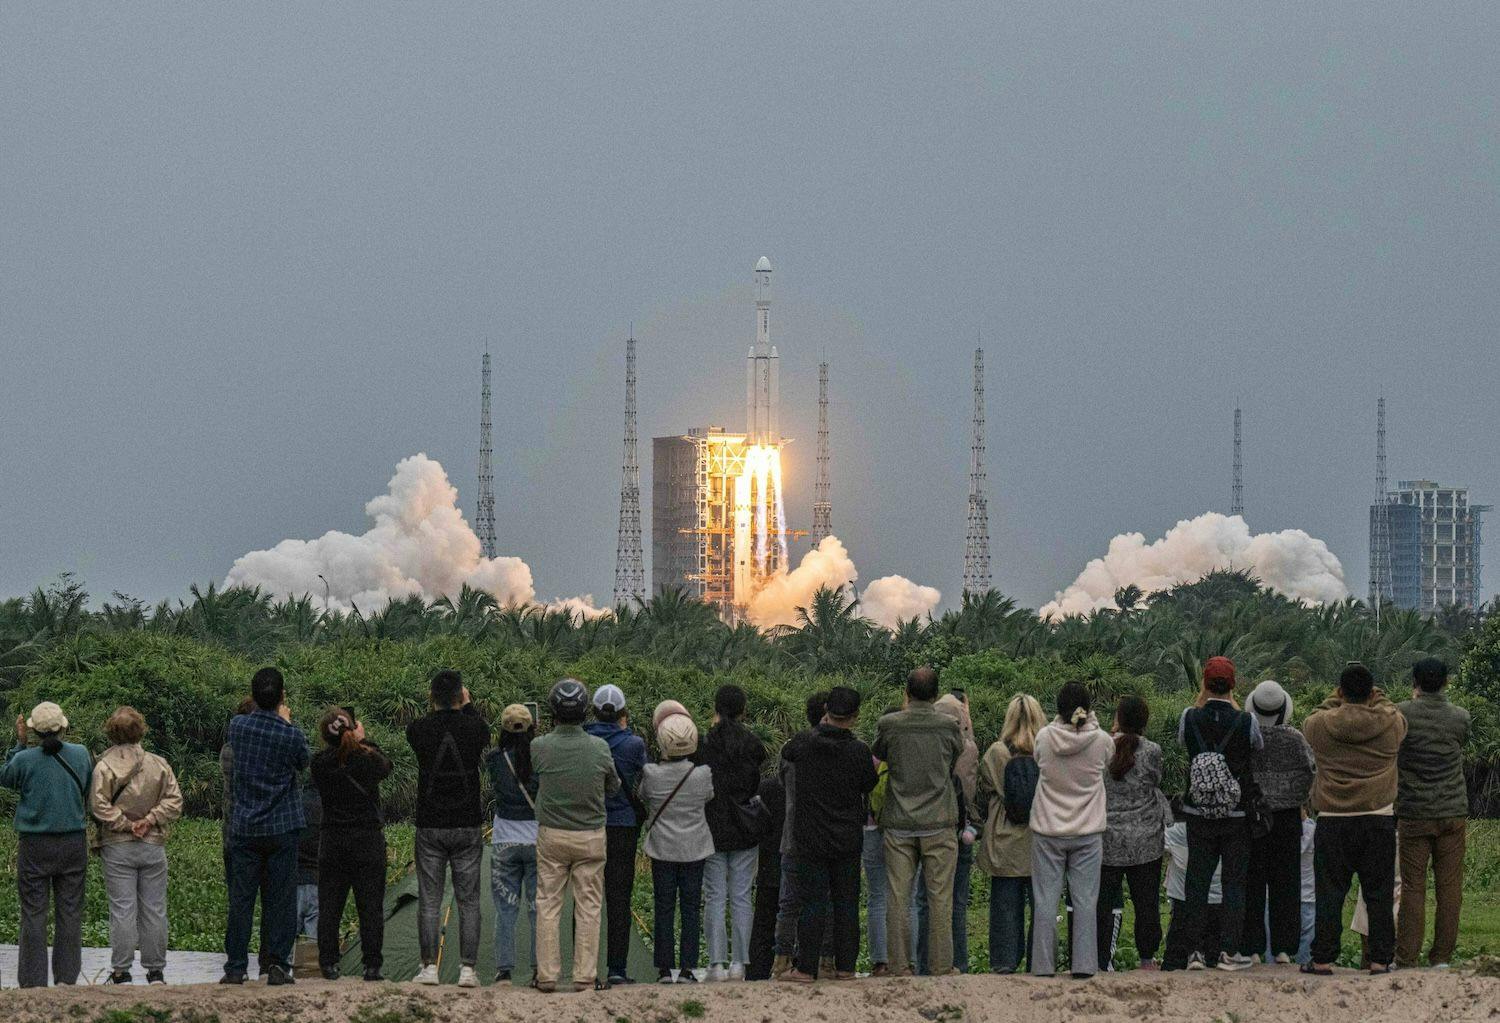 China Wirtschaft, Raumfahrt, Raumfahrtindustrie: Eine Rakete mit dem Relaissatelliten Queqiao2 für die Kommunikation zwischen Erde und Mond hebt vom Wenchang Space Launch Center ab.